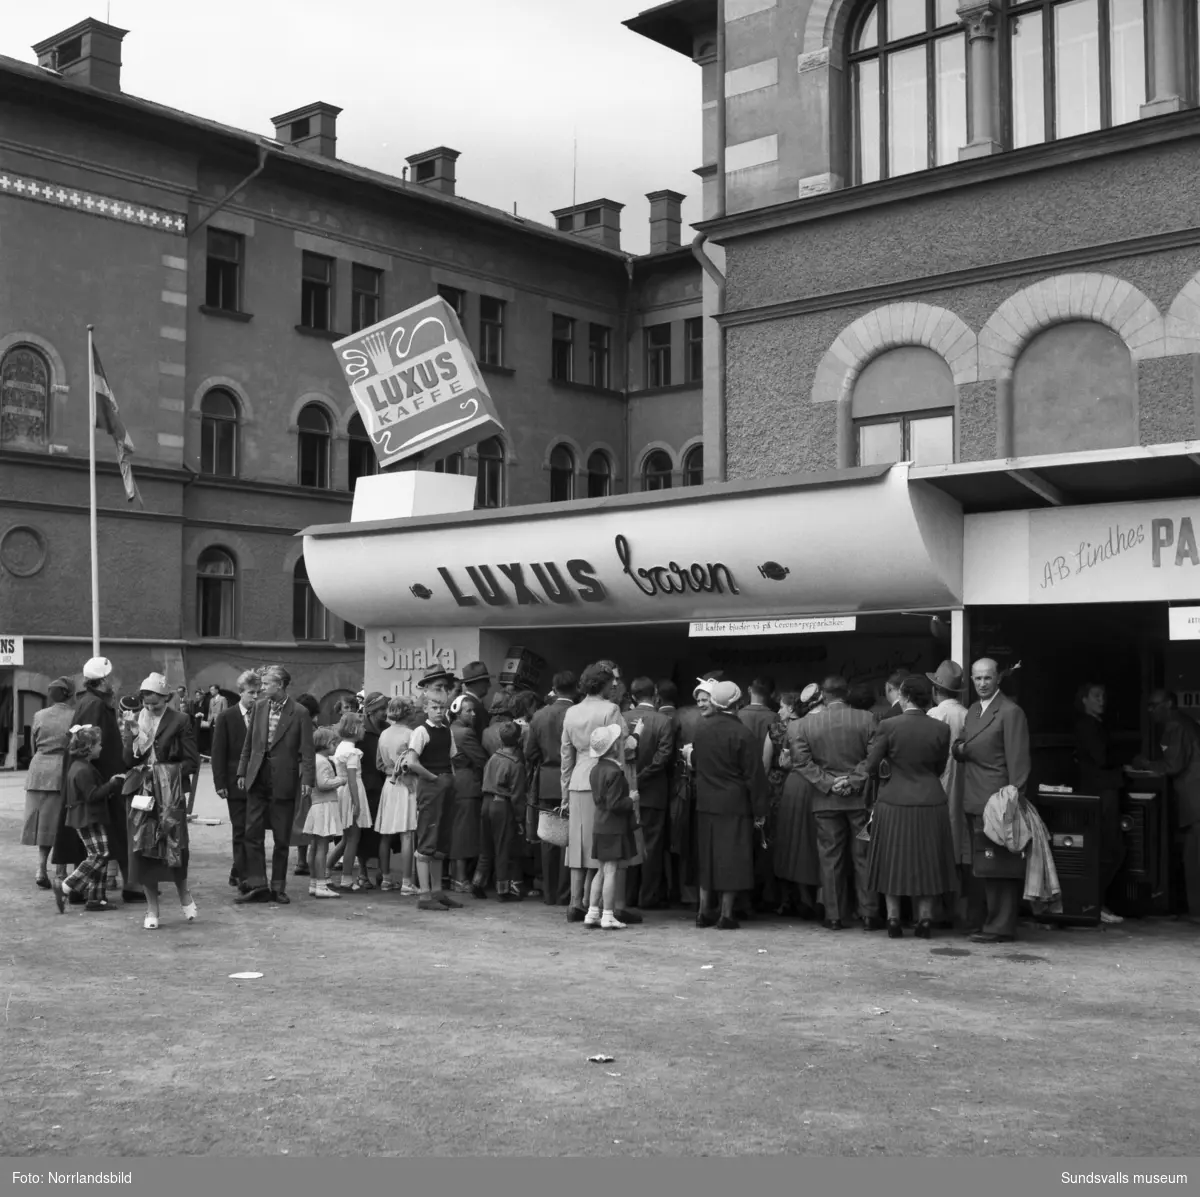 Vid Sundsvallsmässan 1954 hade Luxus kaffe satt upp Luxus-baren vid GA-skolan med demonstration och pristävling. Till kaffet serverades Corona-pepparkakor.